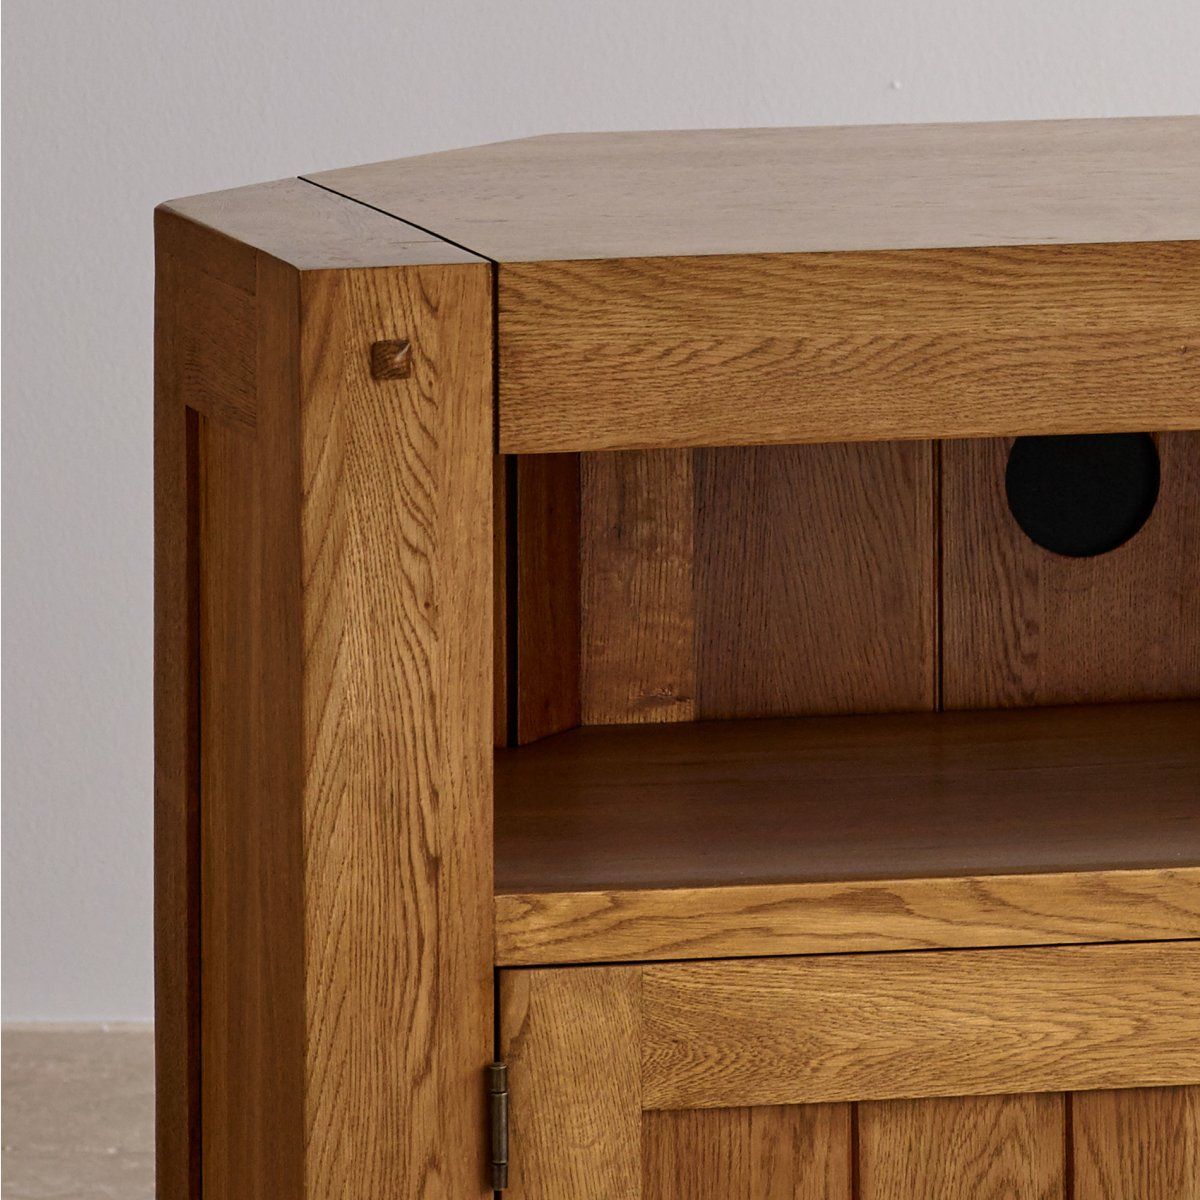 Quercus Corner Tv Cabinet In Rustic Oak | Oak Furniture Land Regarding Rustic Corner Tv Cabinets (View 2 of 15)